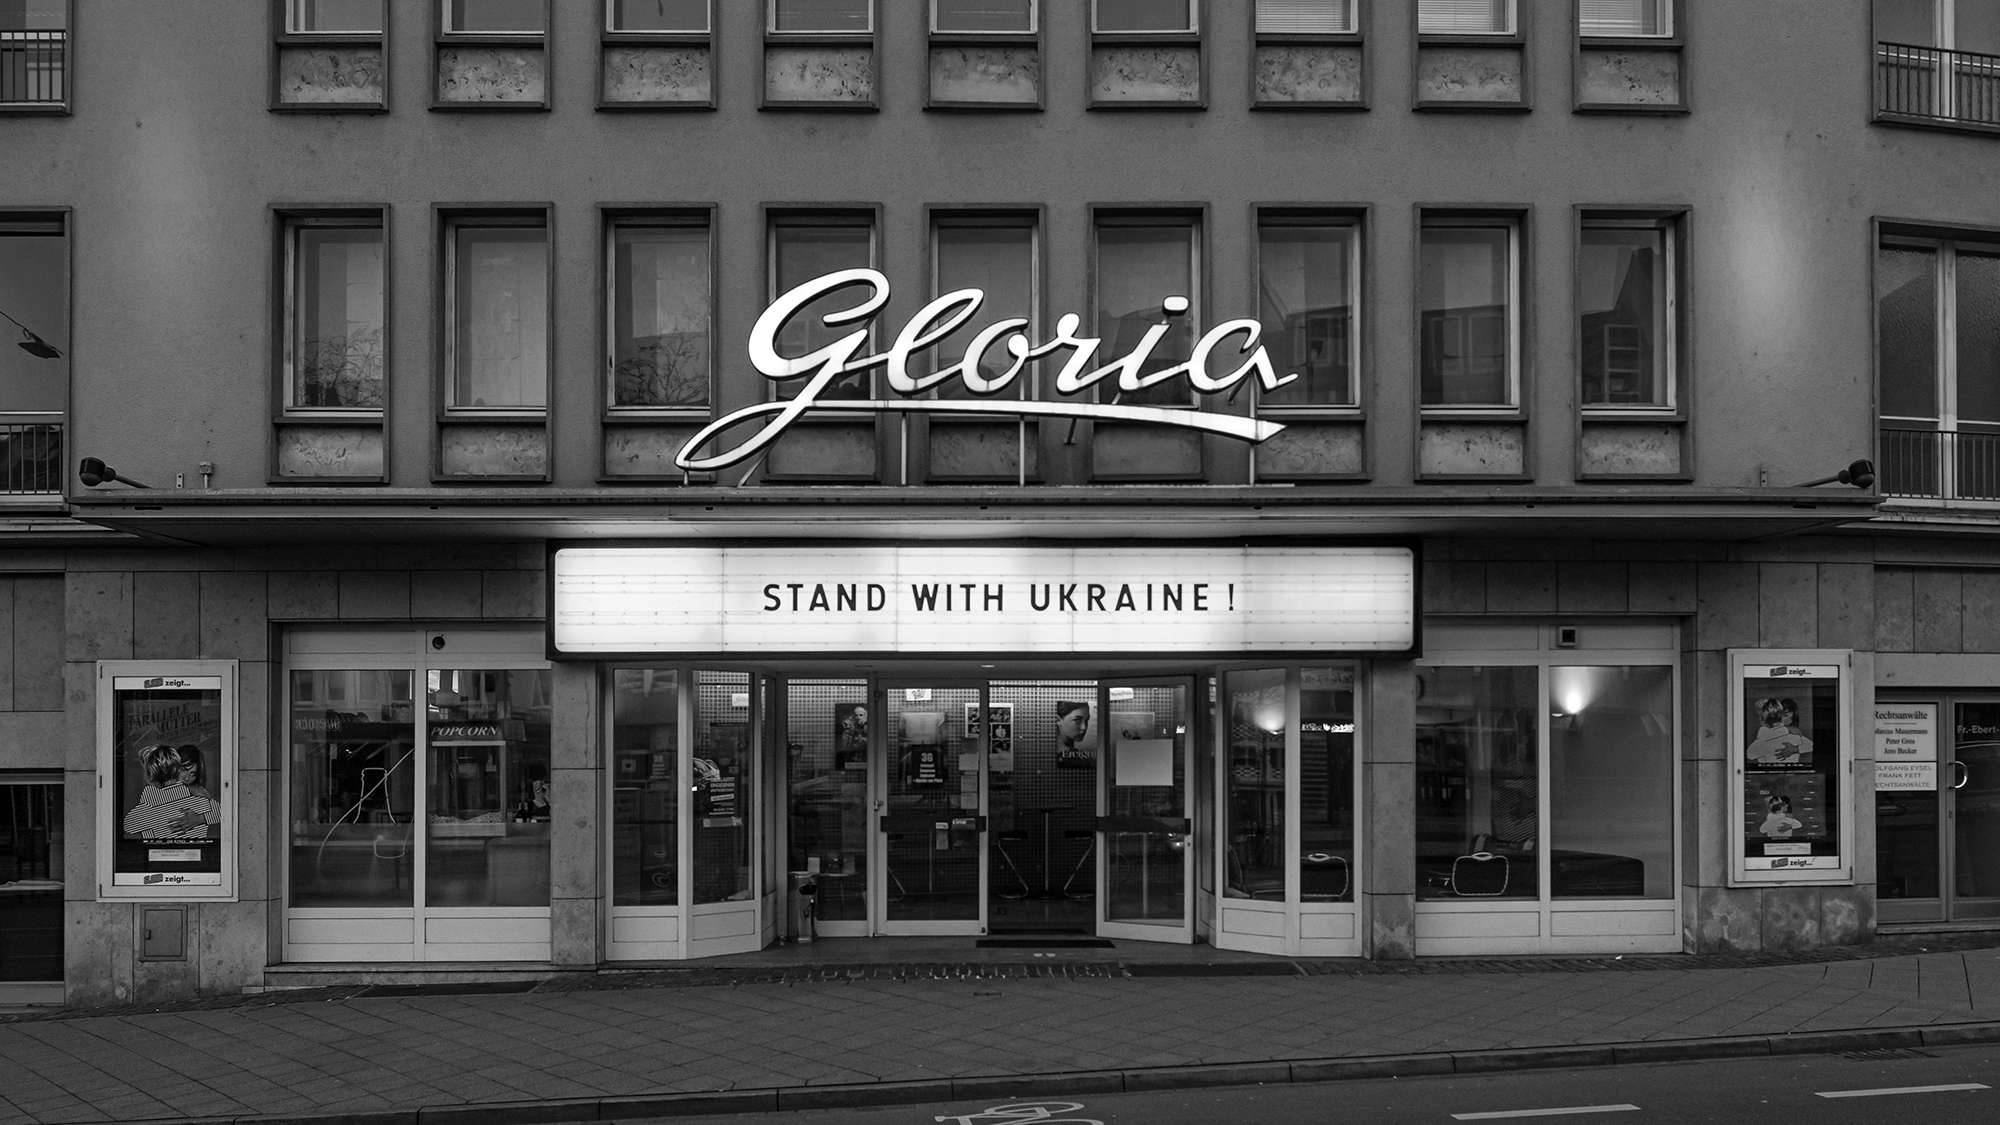 Leuchtreklame über einem Kino mit Solidaritätsbekundung mit der Ukraine - Stand with Ukraine!